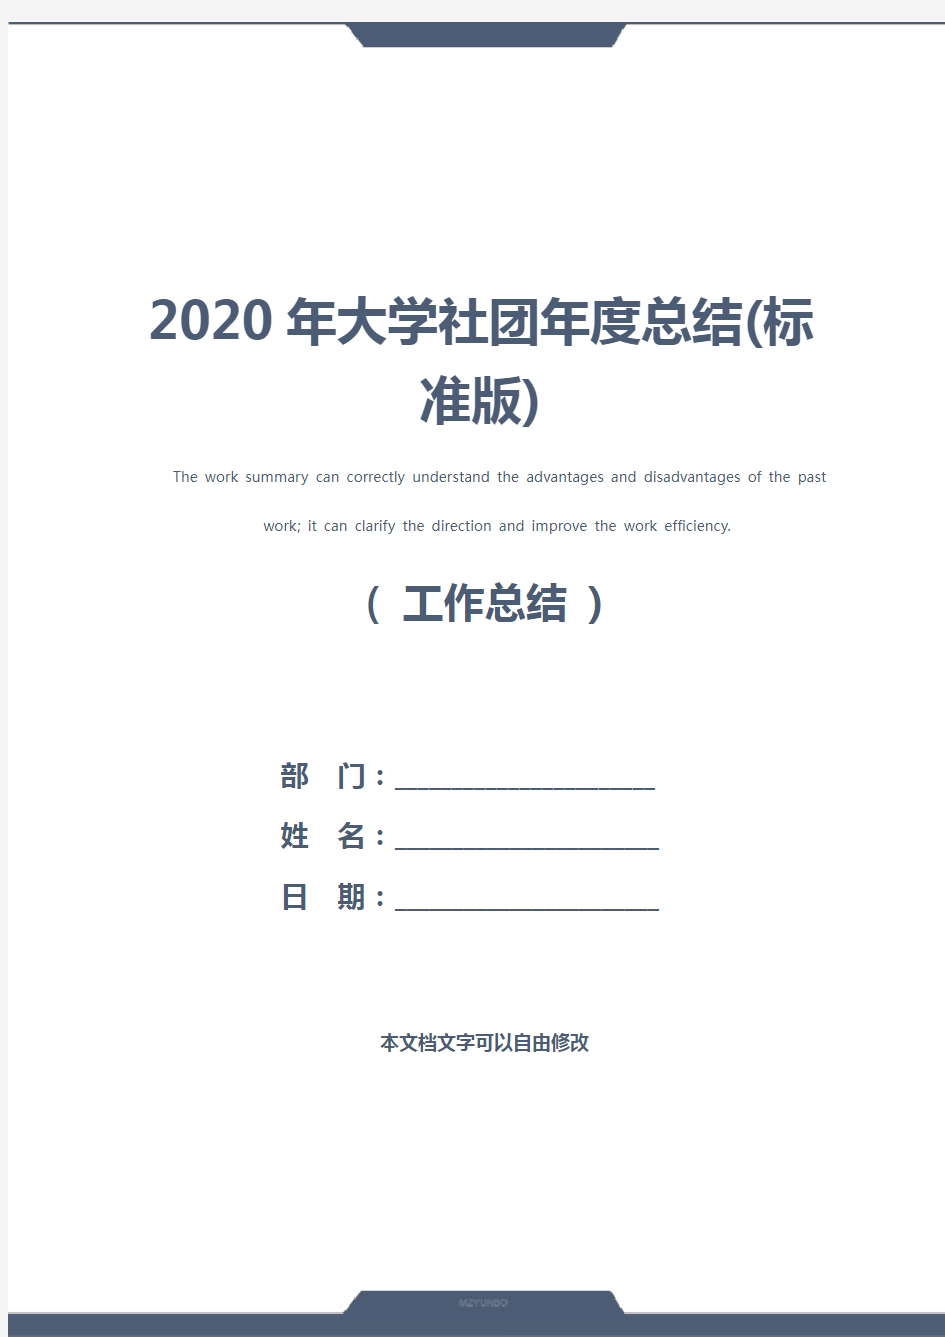 2020年大学社团年度总结(标准版)